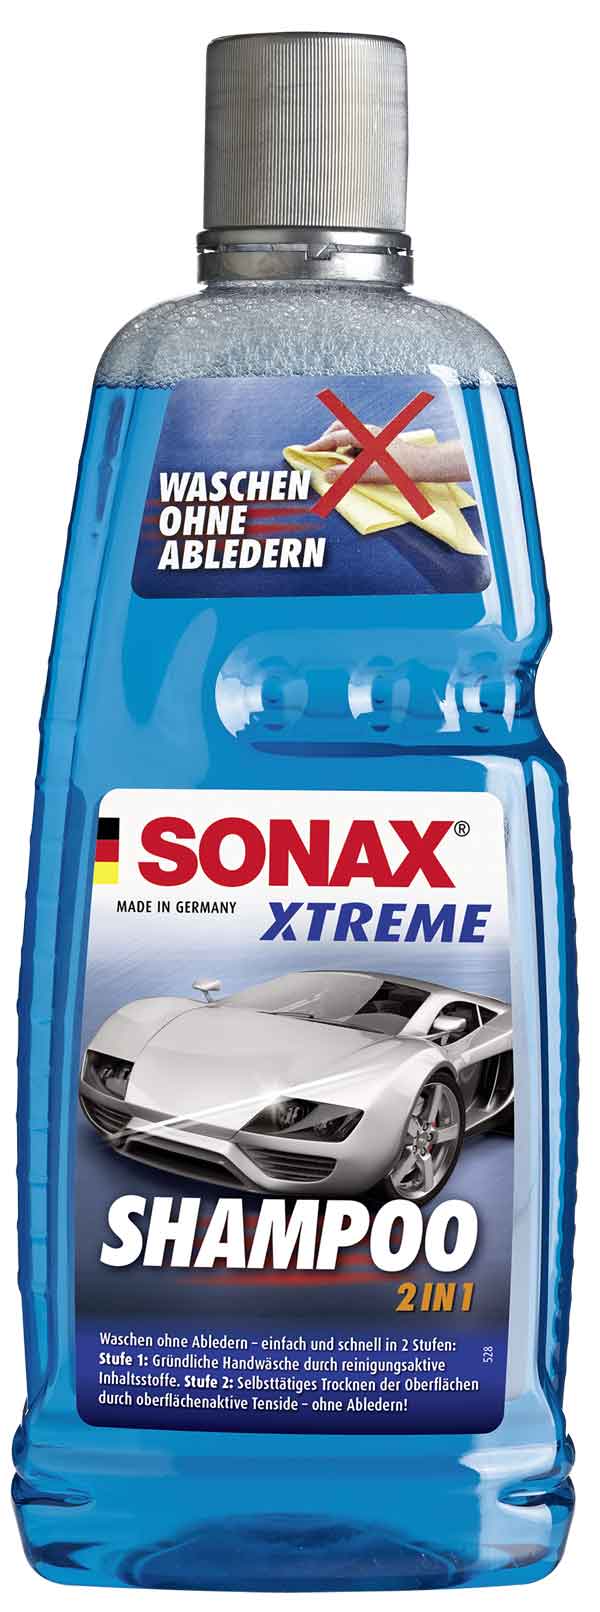 SONAX XTREME Shampoo 2 in 1 FelgenReiniger PLUS ScheibenReiniger Sommer gebrauchsfertig 3L ReifenGlanzSpray Wet Look AutoInnenReiniger